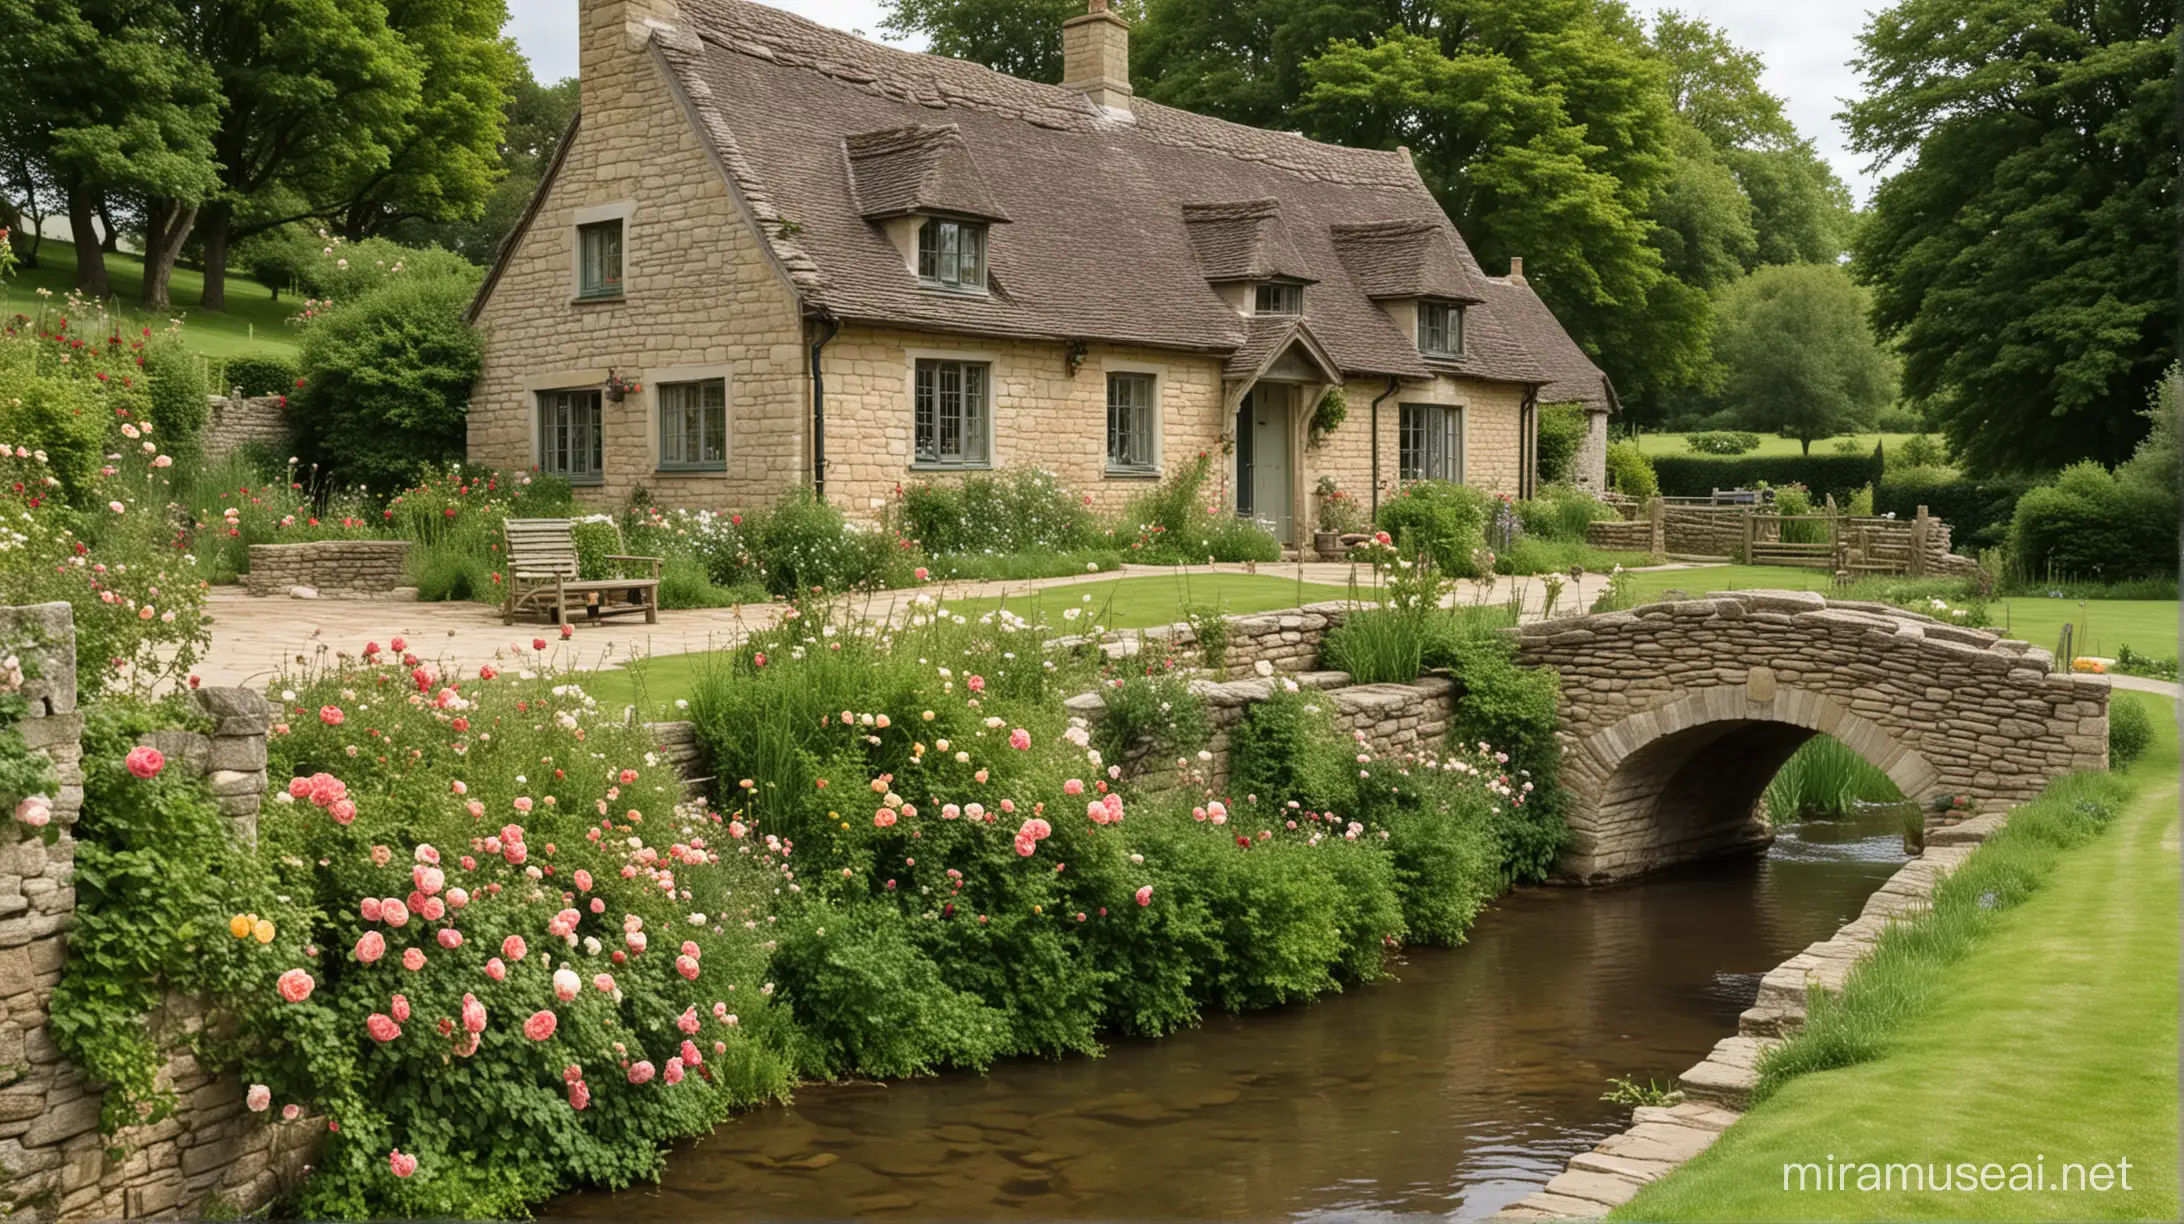 Idyllic Cotswold English Cottage with Stone Bridge and Roses